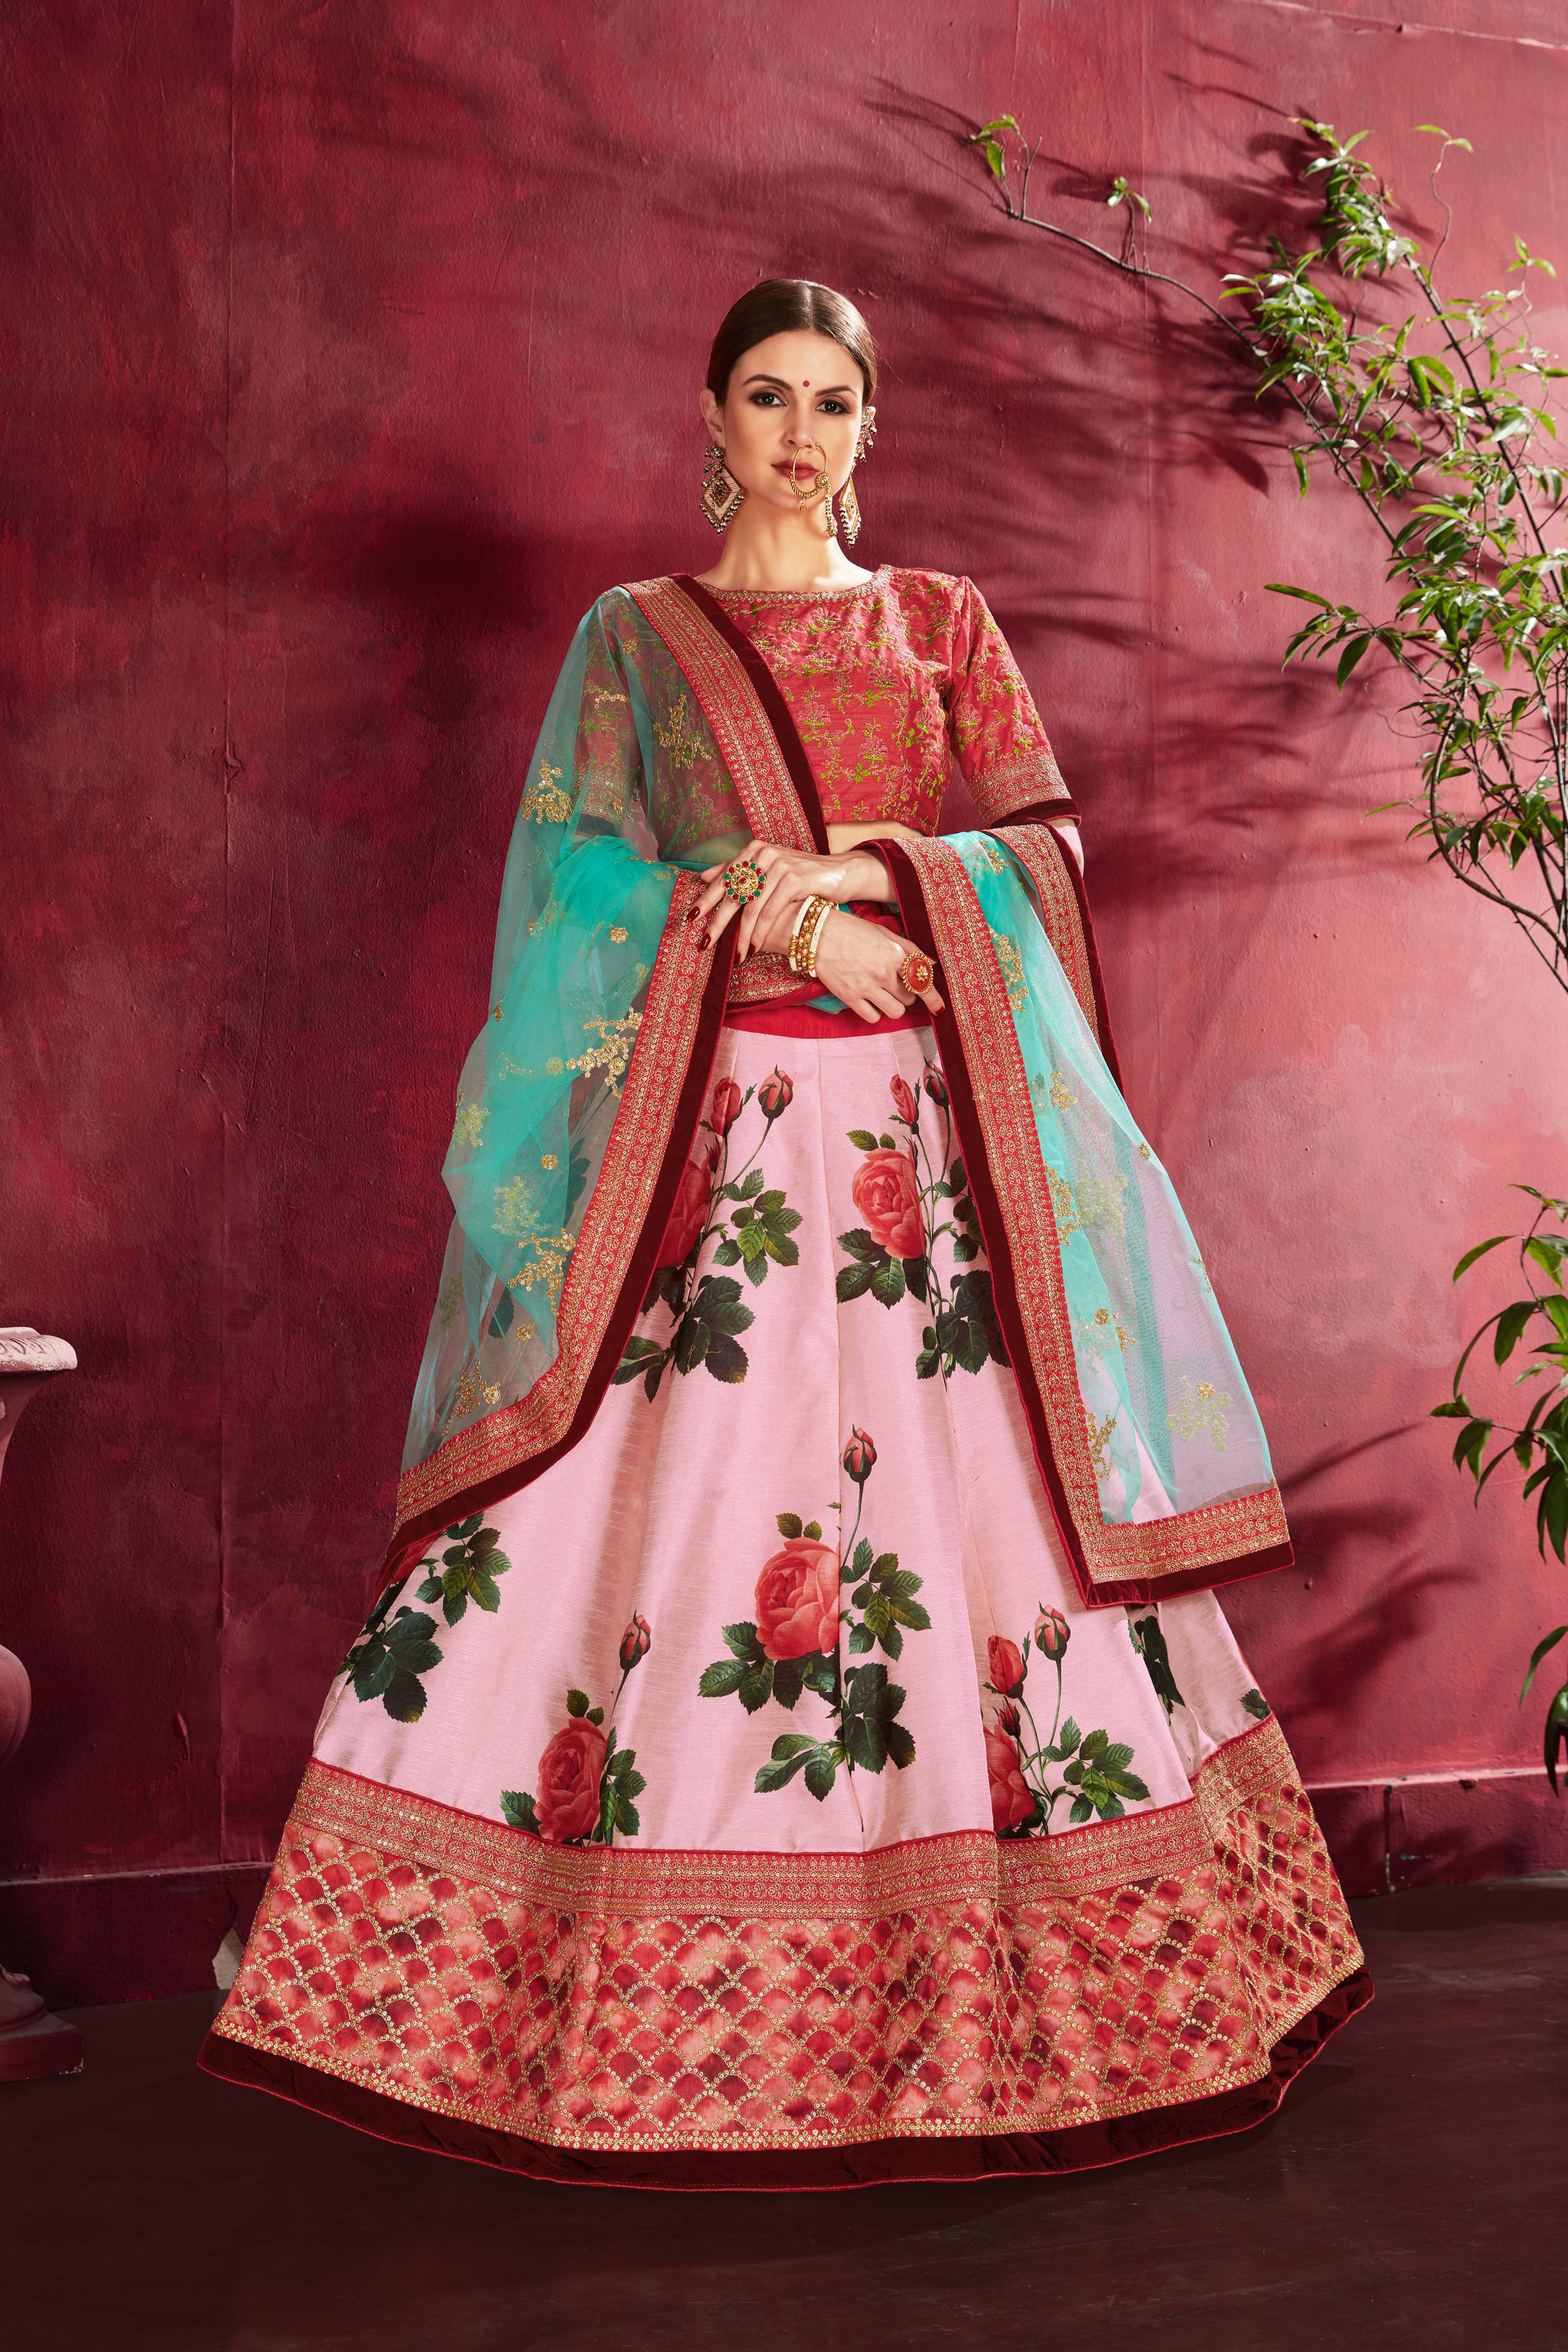 Phenomenal Rose Pink Floral Printed Banglory Silk Wedding Lehenga Choli